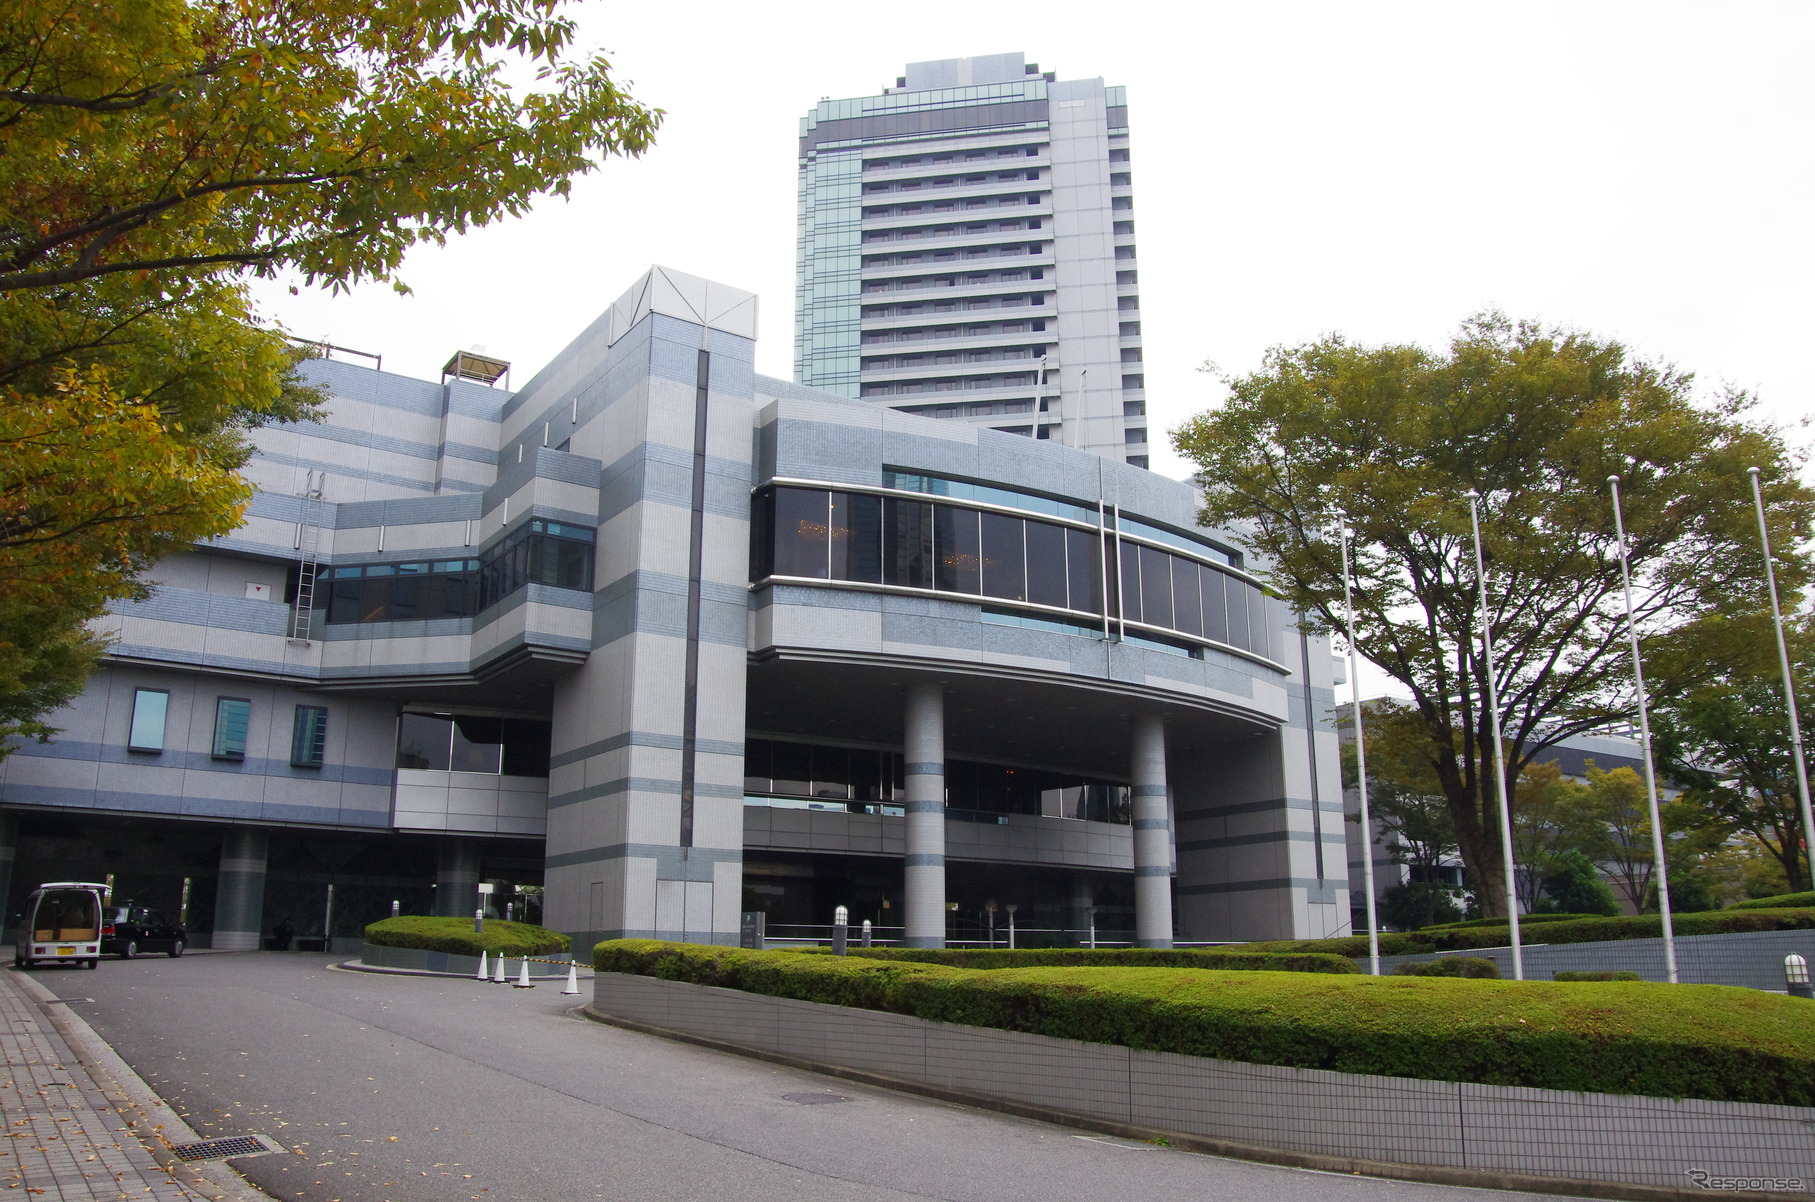 会場となった大阪のホテル。ここで自動車修理の競技会が行われるとは誰が思うだろうか。アウディにとっても新しい試みであったそうだ。